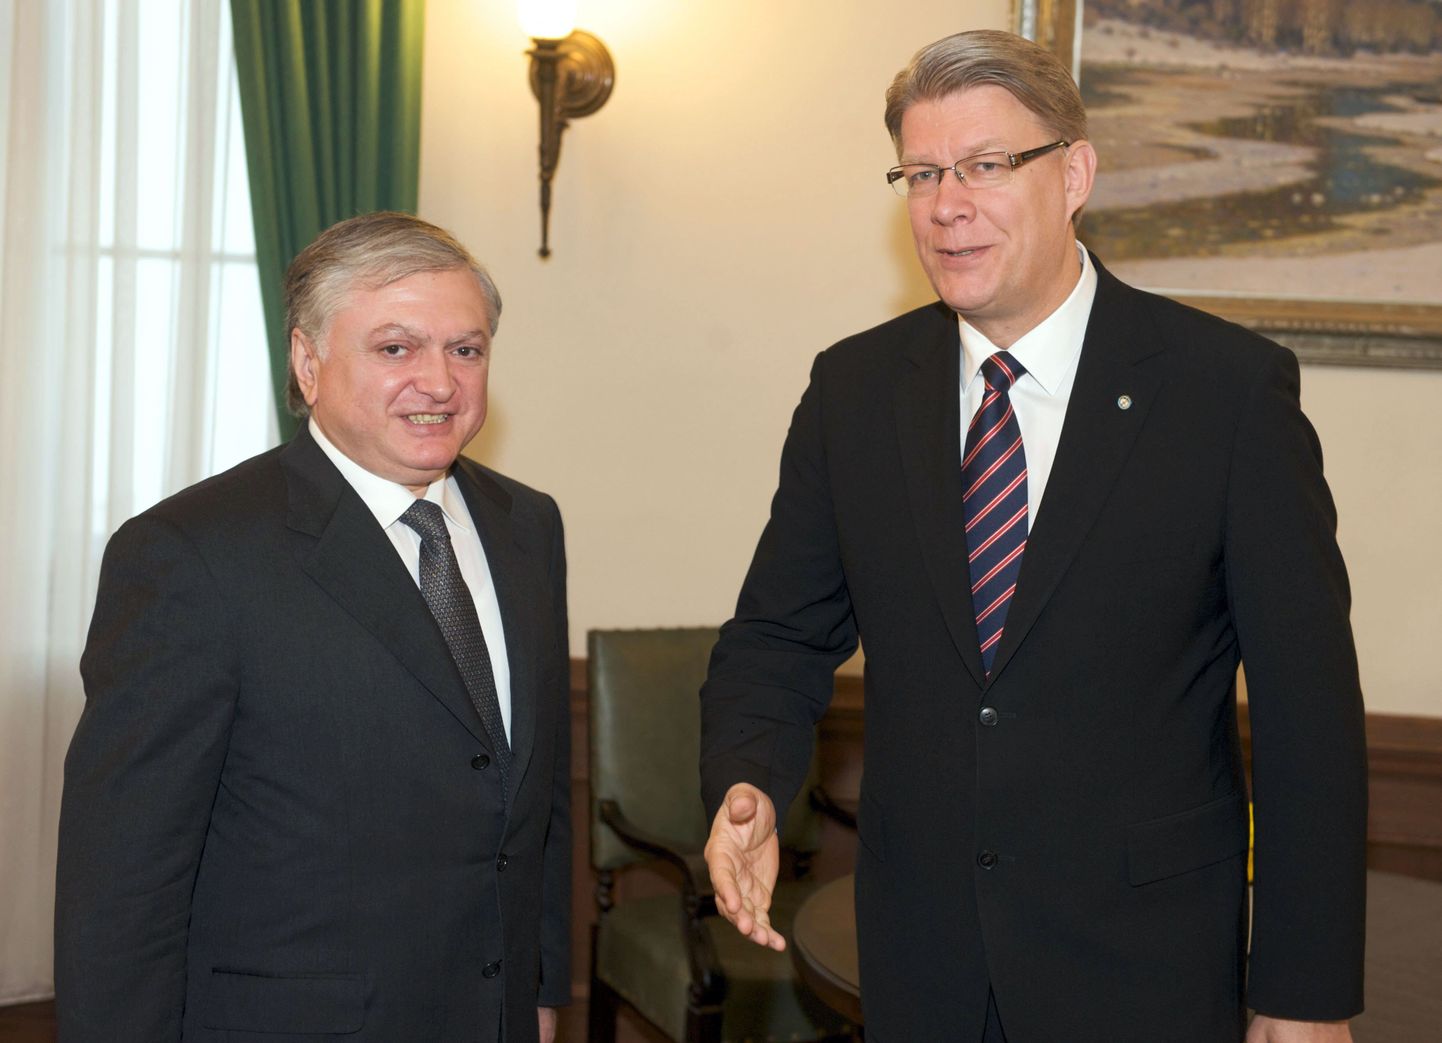 Armeenia välisminister Edward Nalbandian külastas enne Eestisse tulekut Lätit, kus kohtus ka riigipea Valdis Zatlersiga.